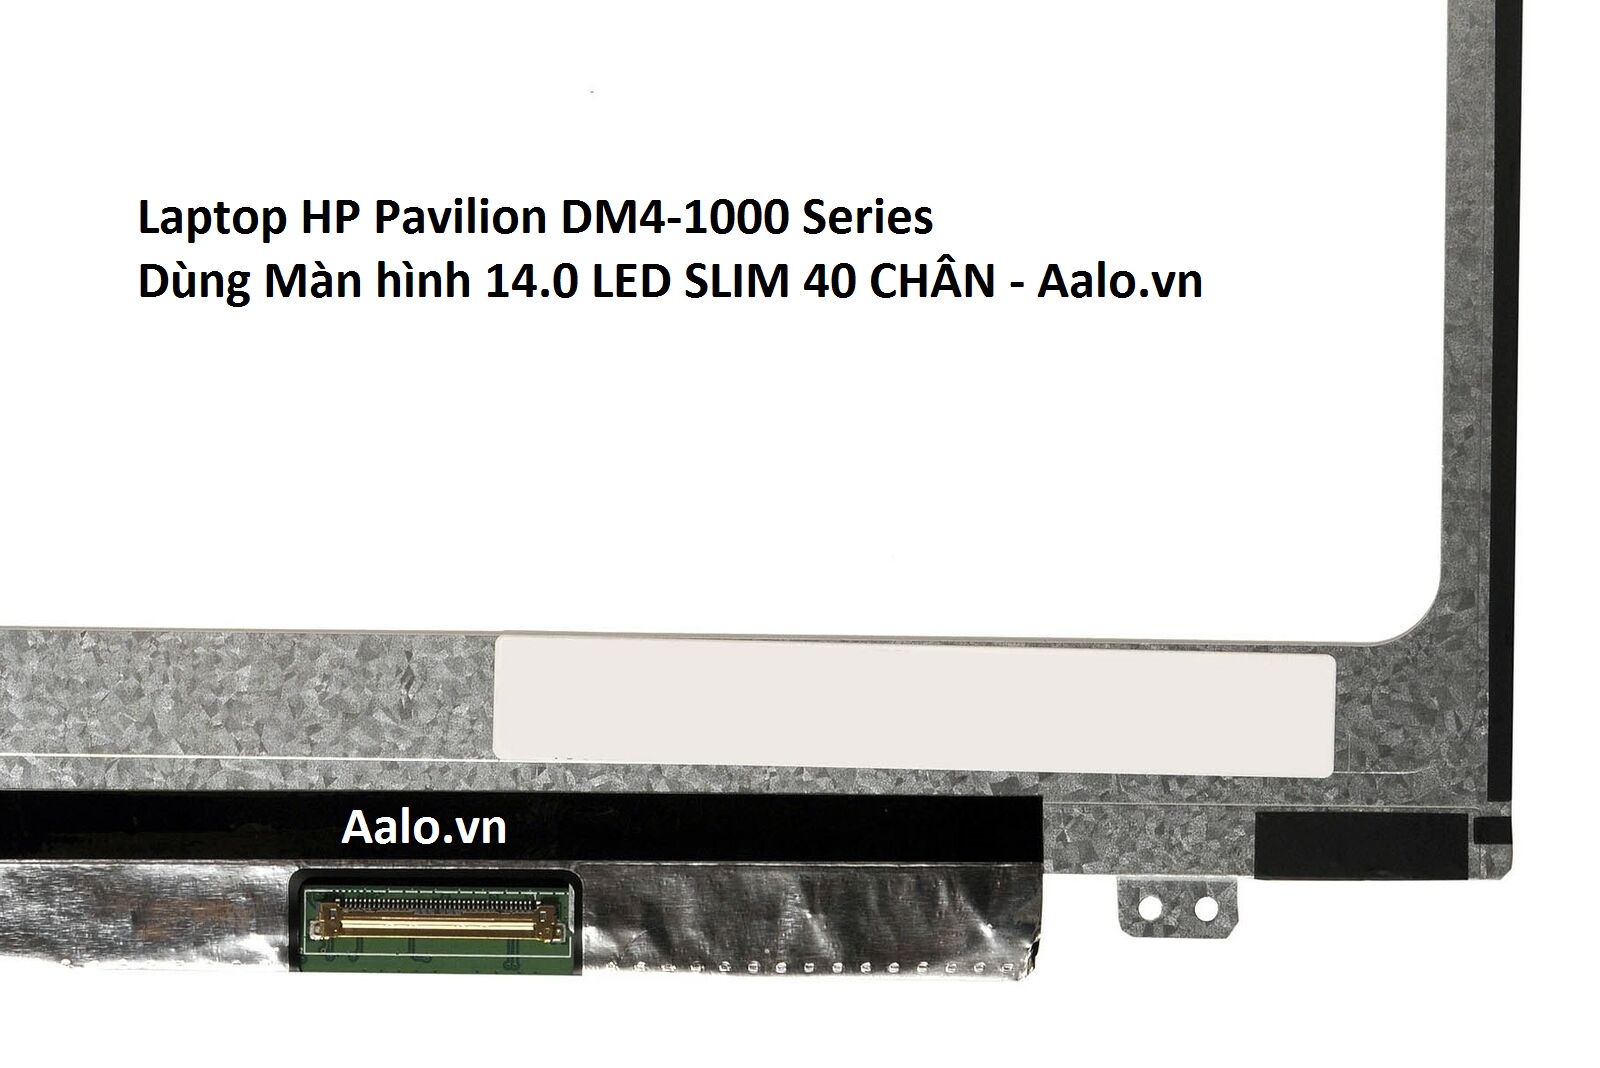 Màn hình Laptop HP Pavilion DM4-1000 Series - Aalo.vn